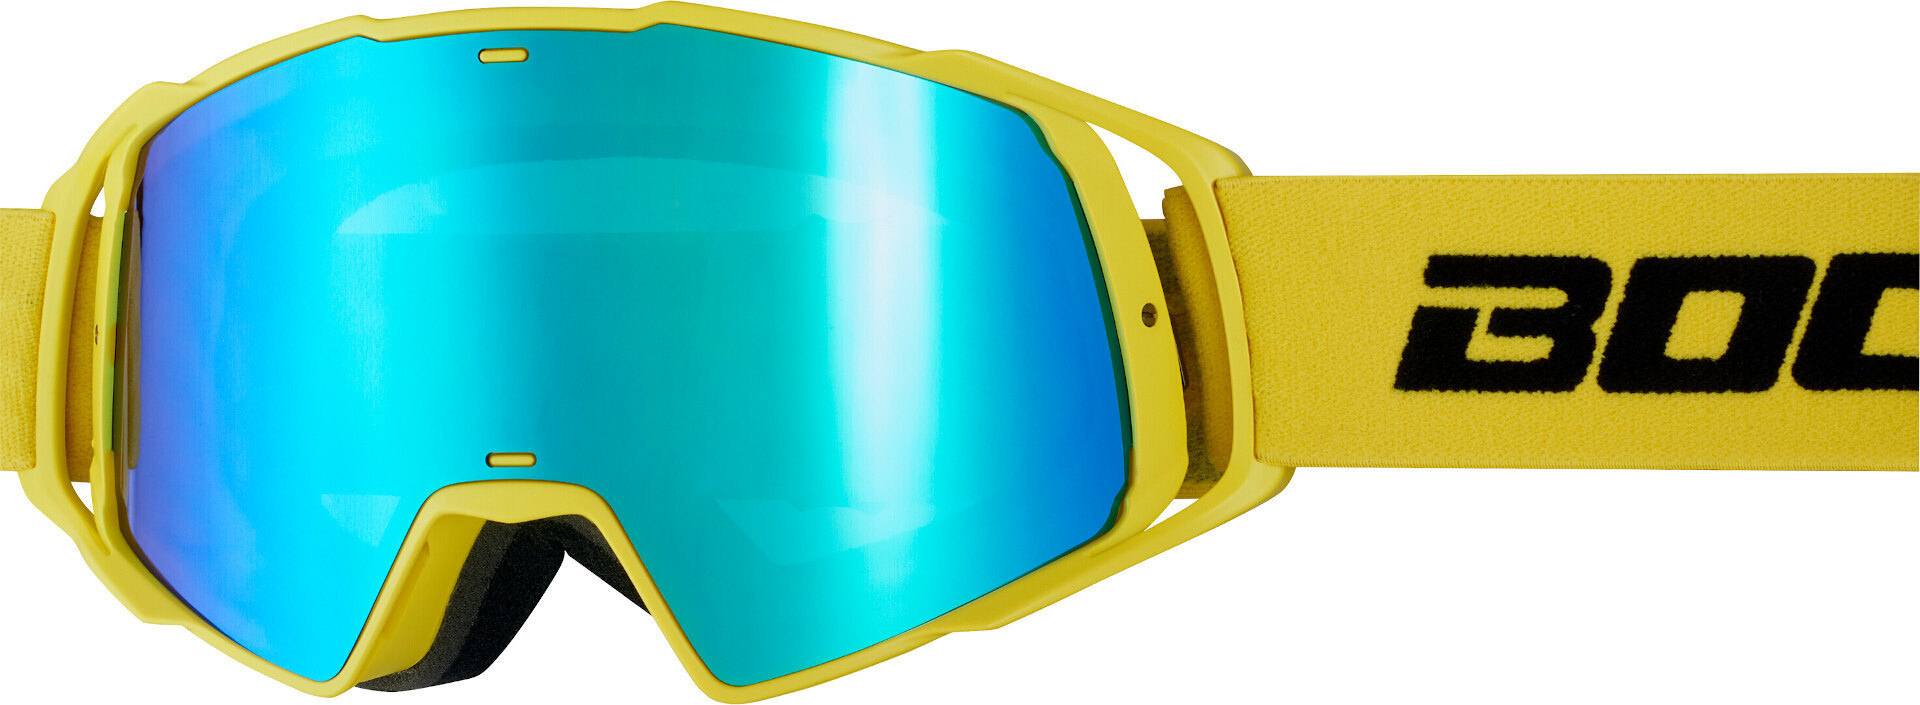 Мотоциклетные очки Bogotto B-Faster с противотуманным покрытием, желтый/черный очки champion c1006 50 г желтый черный